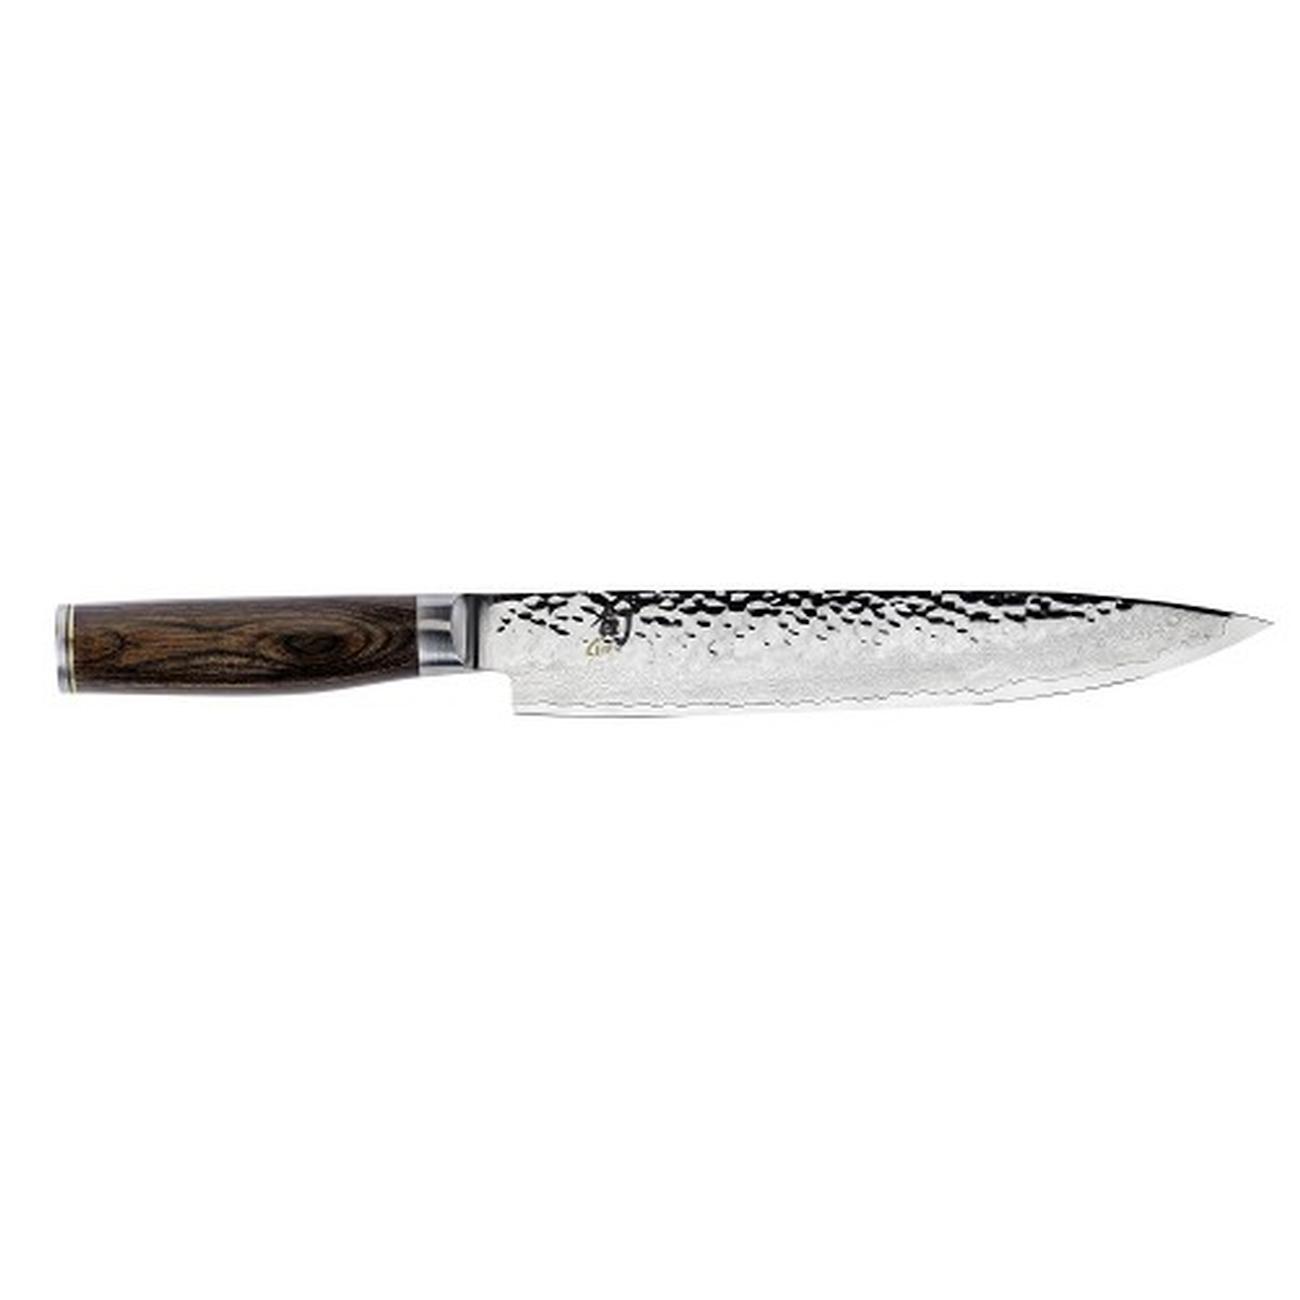 kai-shun-premier-slicing-knife-9-5 - Kai Shun Premier Slicing Knife 9.5 Inch